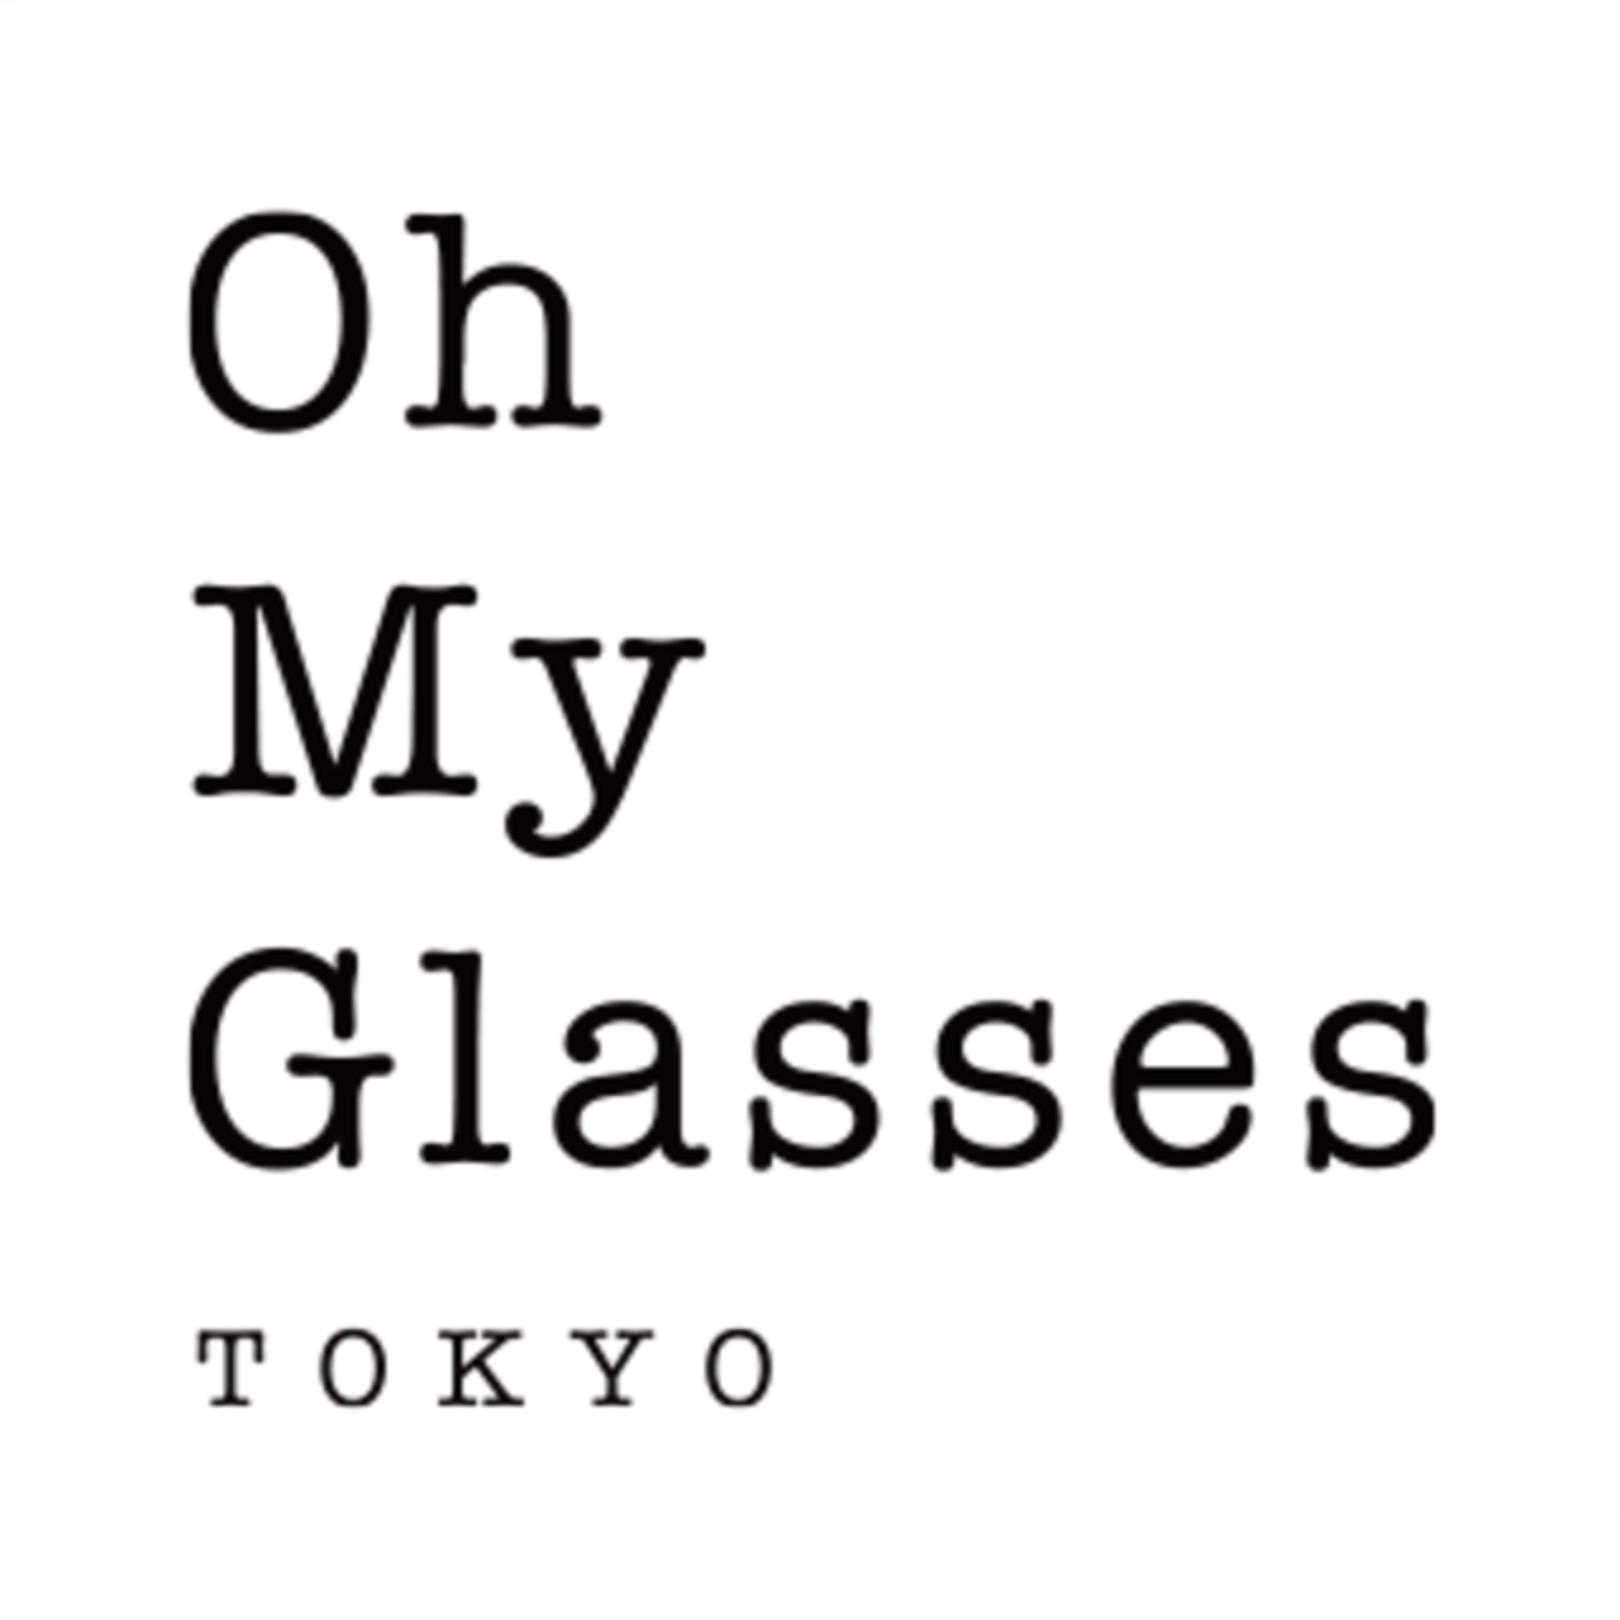 メガネのオーマイグラス東京